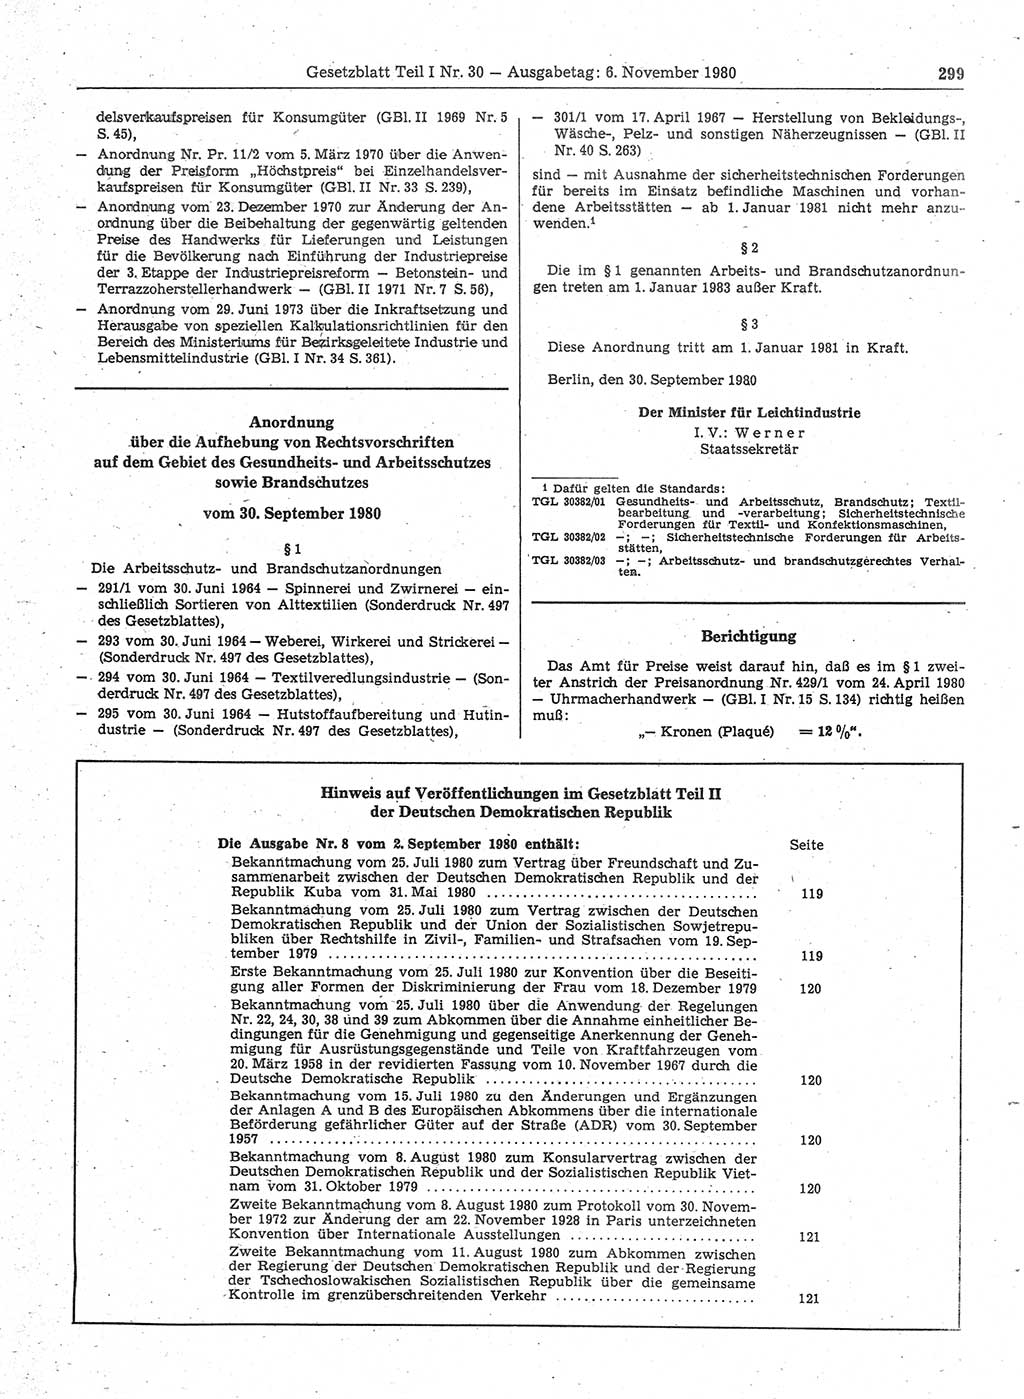 Gesetzblatt (GBl.) der Deutschen Demokratischen Republik (DDR) Teil Ⅰ 1980, Seite 299 (GBl. DDR Ⅰ 1980, S. 299)